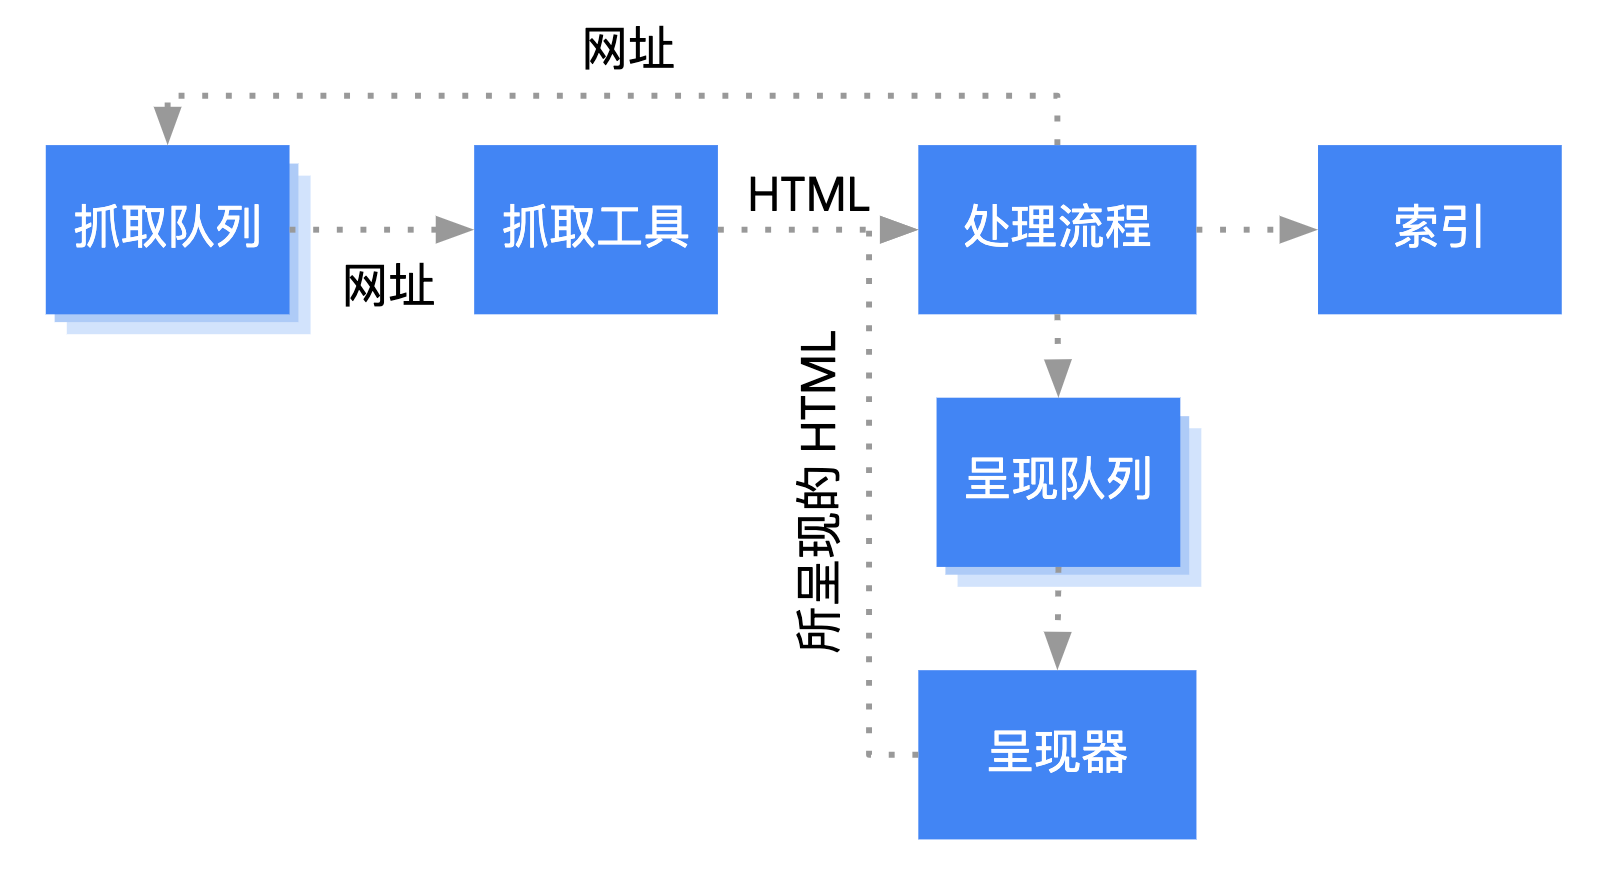 Googlebot 从抓取队列中获取网址，对其进行抓取，然后将其传递到处理阶段。在处理阶段，Googlebot 会提取重新回到抓取队列的链接，并将网页加入渲染队列。网页从渲染队列进入渲染程序，渲染程序将所渲染的 HTML 传递回处理阶段，从而将内容编入索引并提取链接以将其放入抓取队列中。